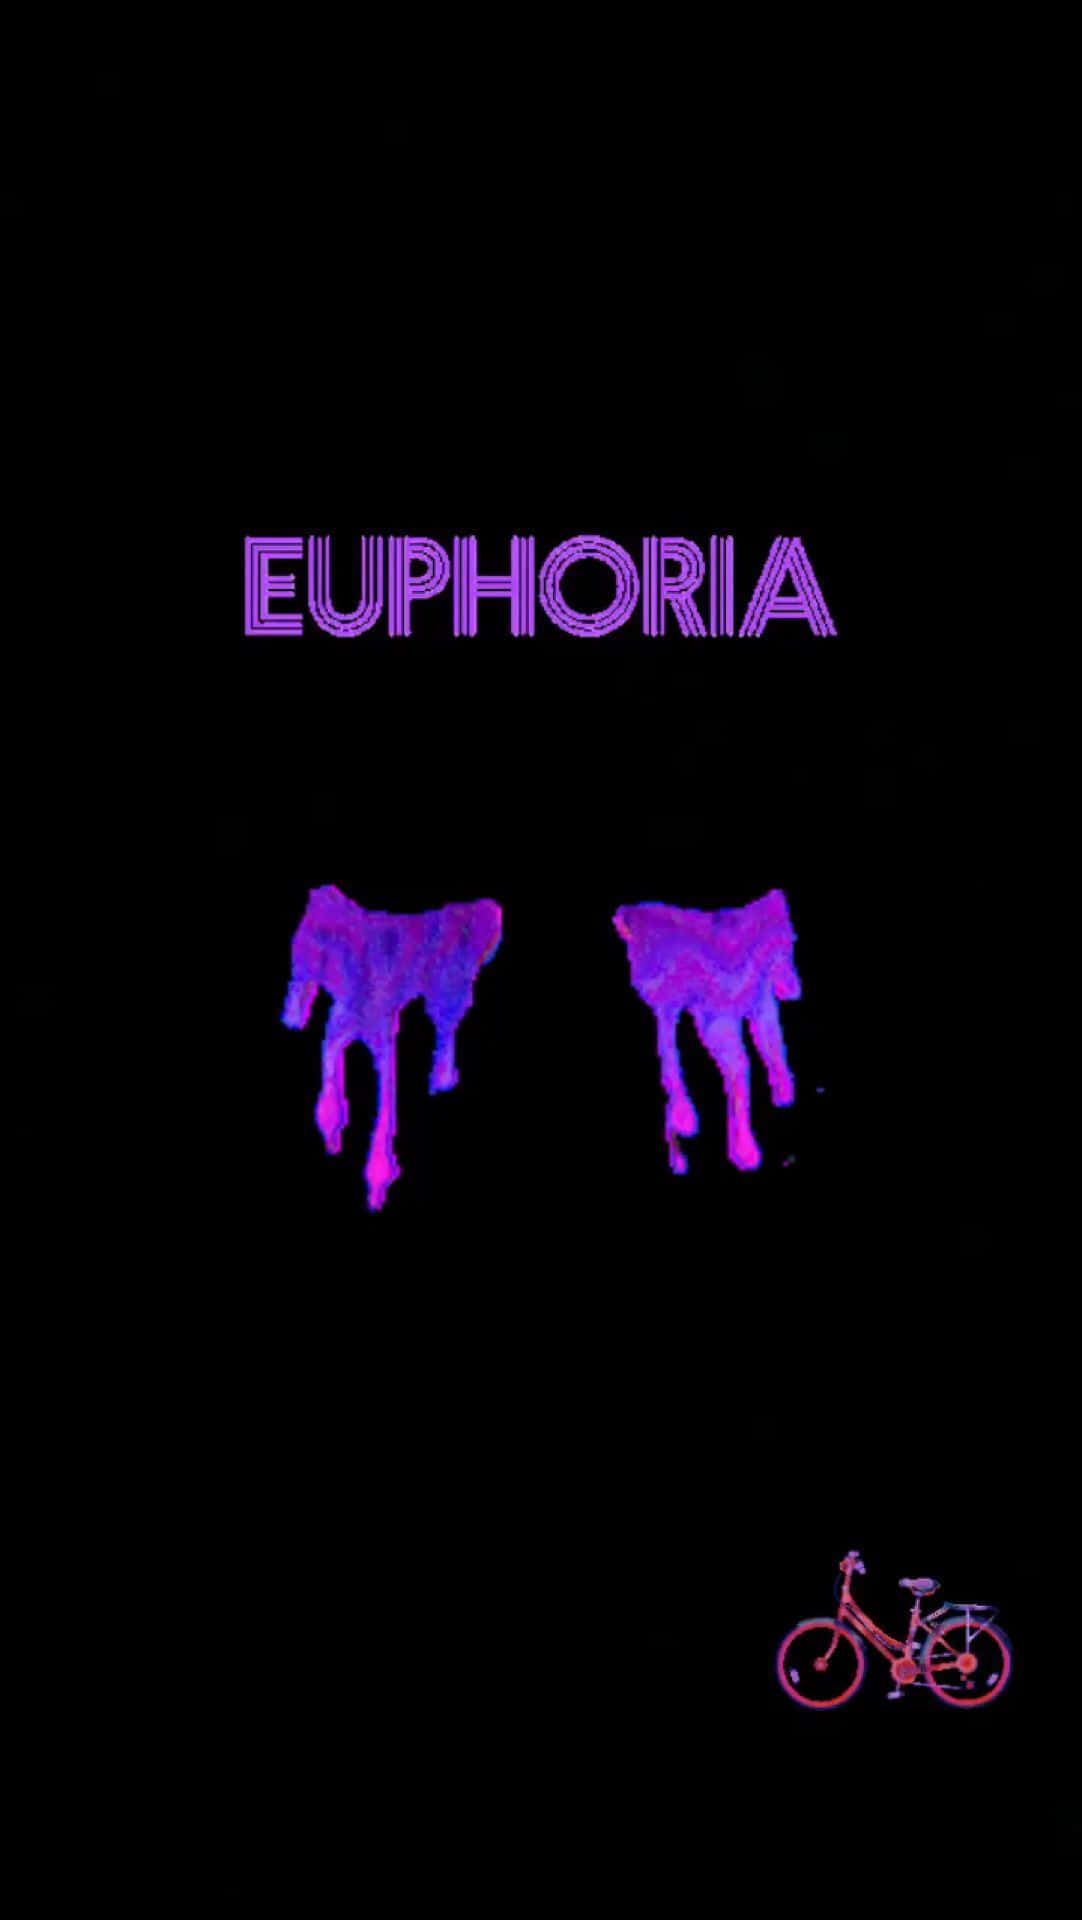 Euphorieeuphorie - Euphorie - Euphorie -